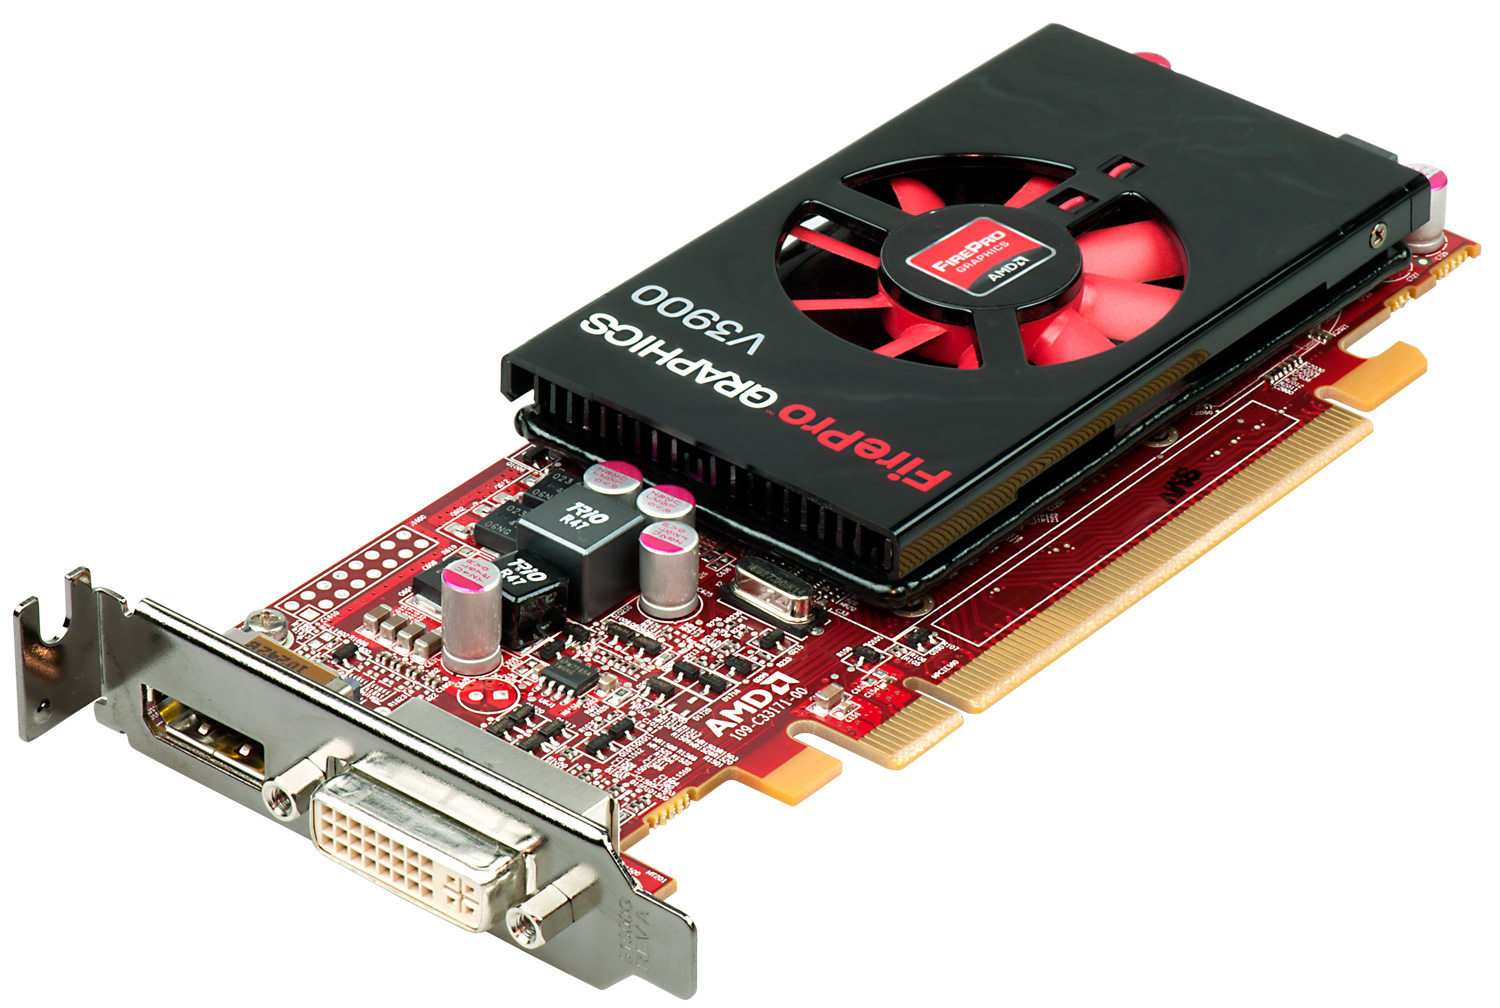 AMD Announces Turks Based FirePro V3900